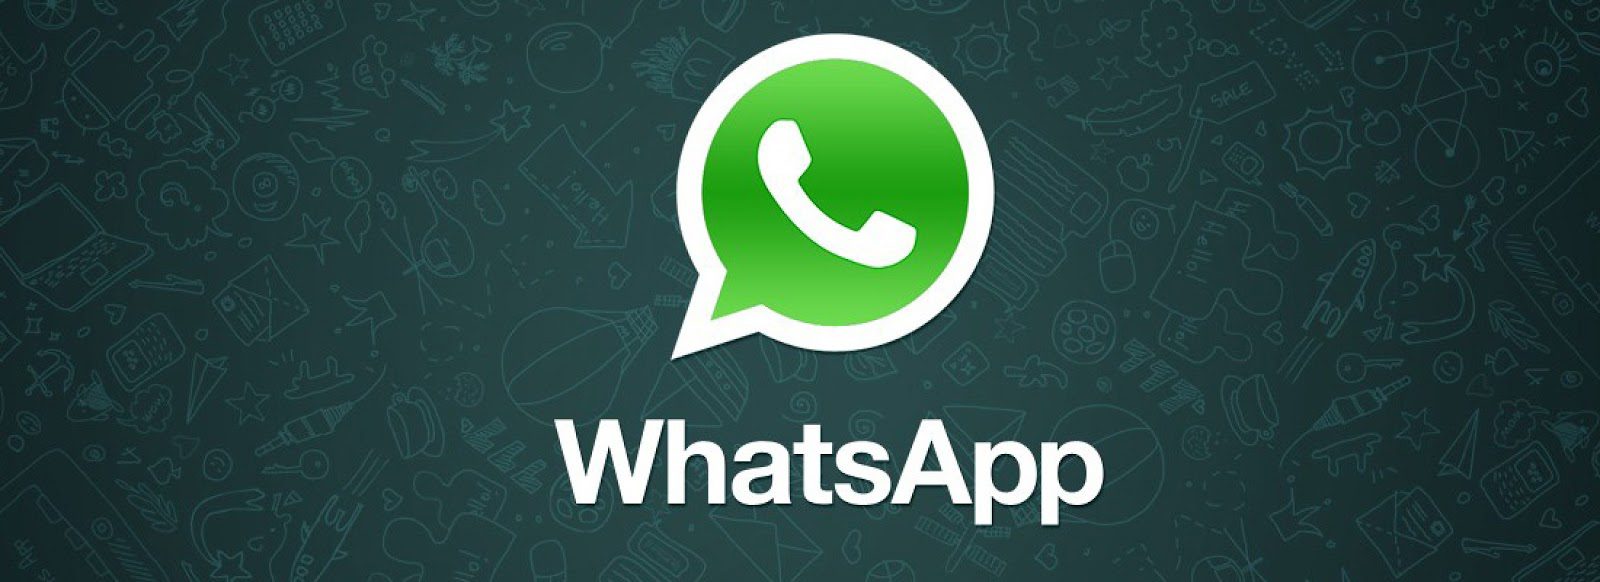 Facebook compra Whatsapp por 16,000 millones, ¿que ideas tendrá?